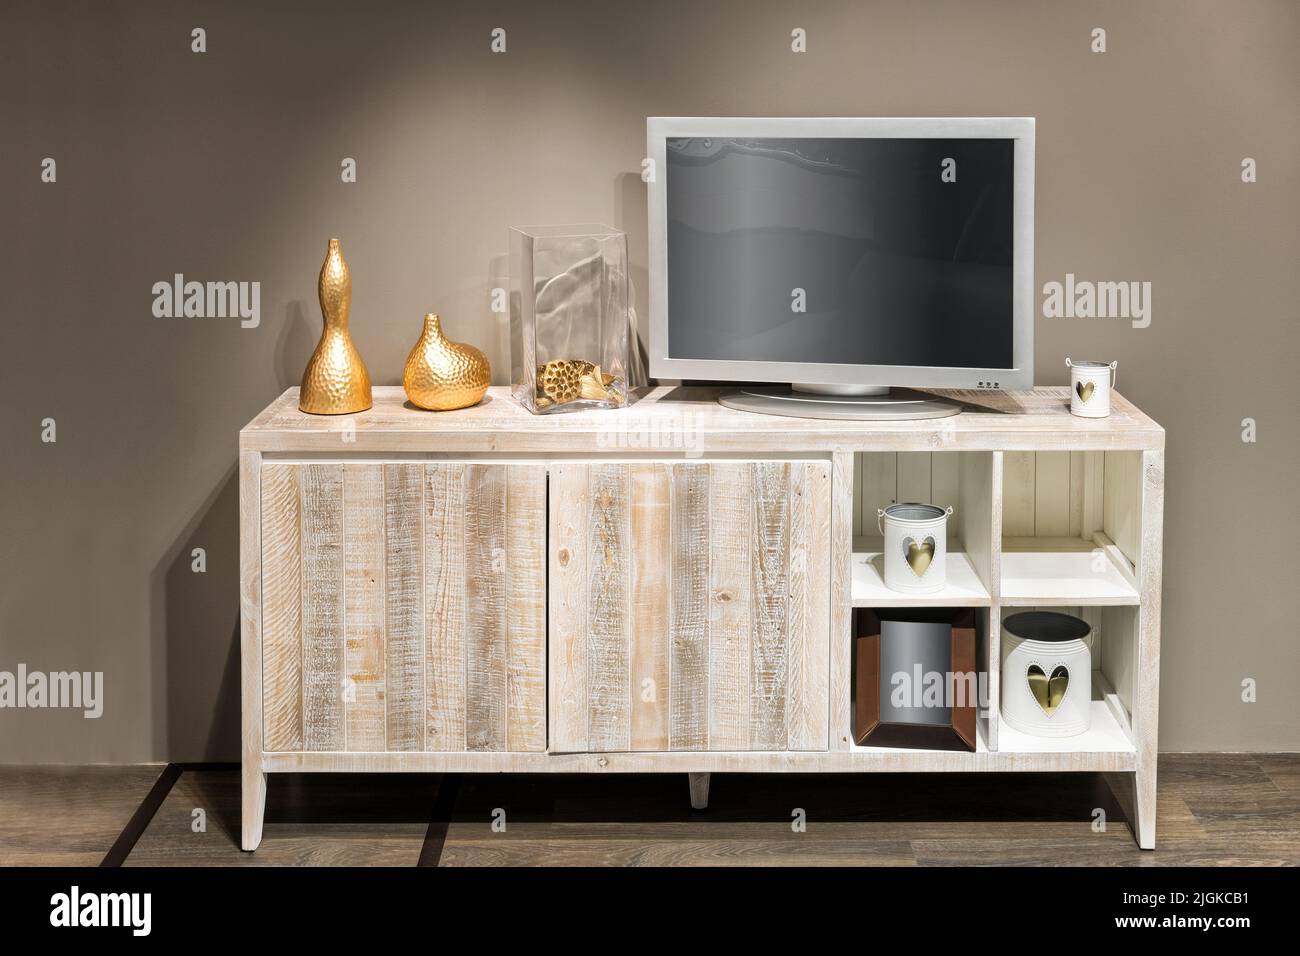 Varie decorazioni eleganti e televisione con schermo vuoto posto sul cabinet contro le pareti beige nel soggiorno Foto Stock